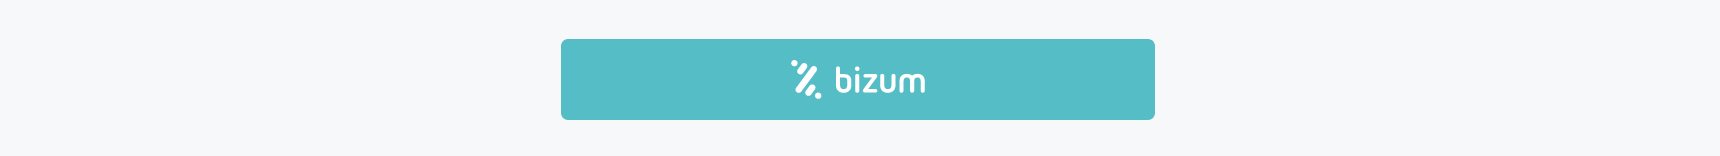 Bizum_payment_button.png